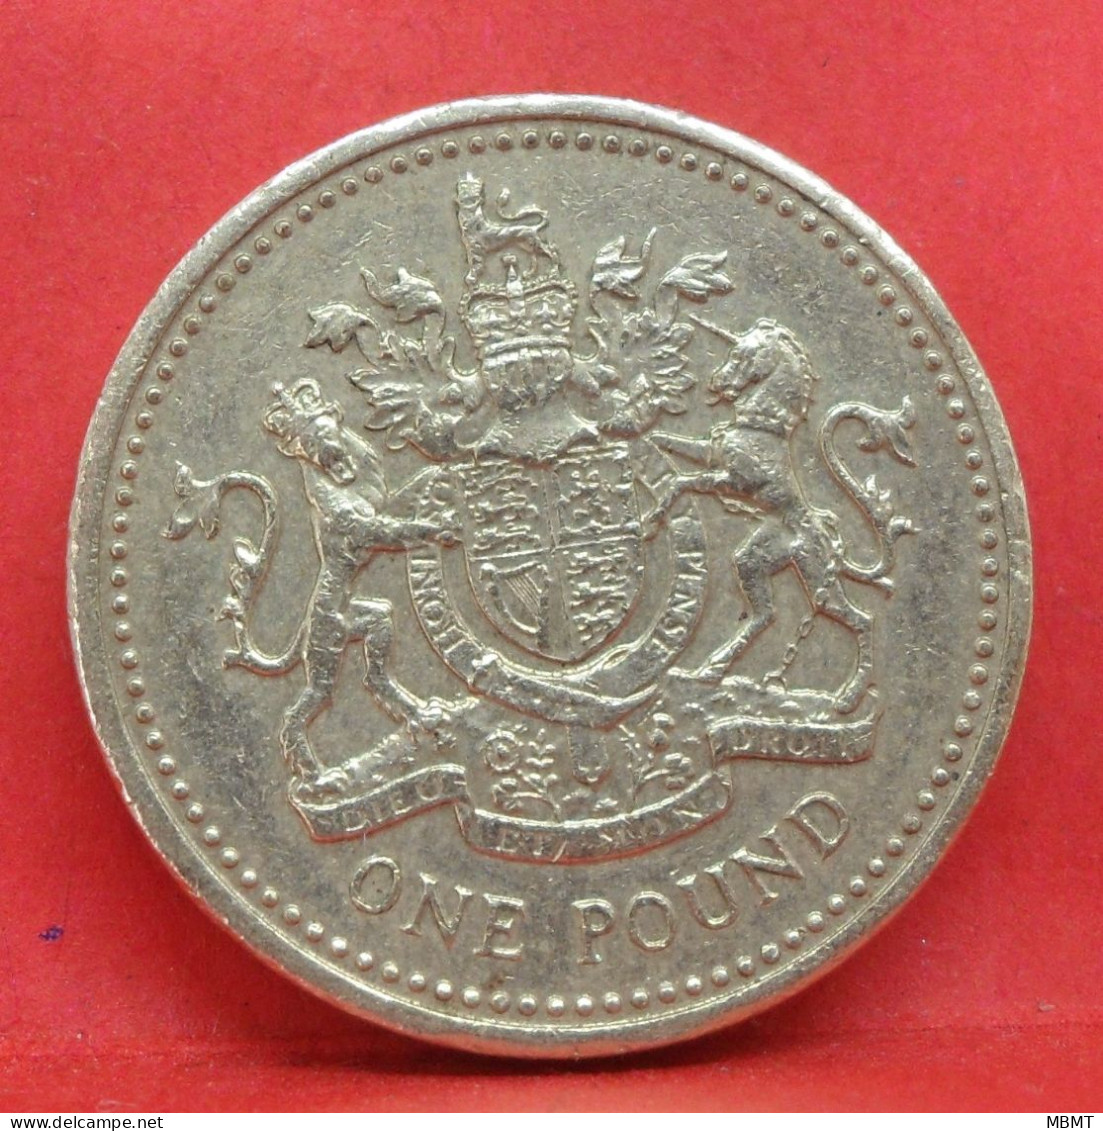 1 Pound 1993 - TB - Pièce Monnaie Grande-Bretagne - Article N°2898 - 1 Pound